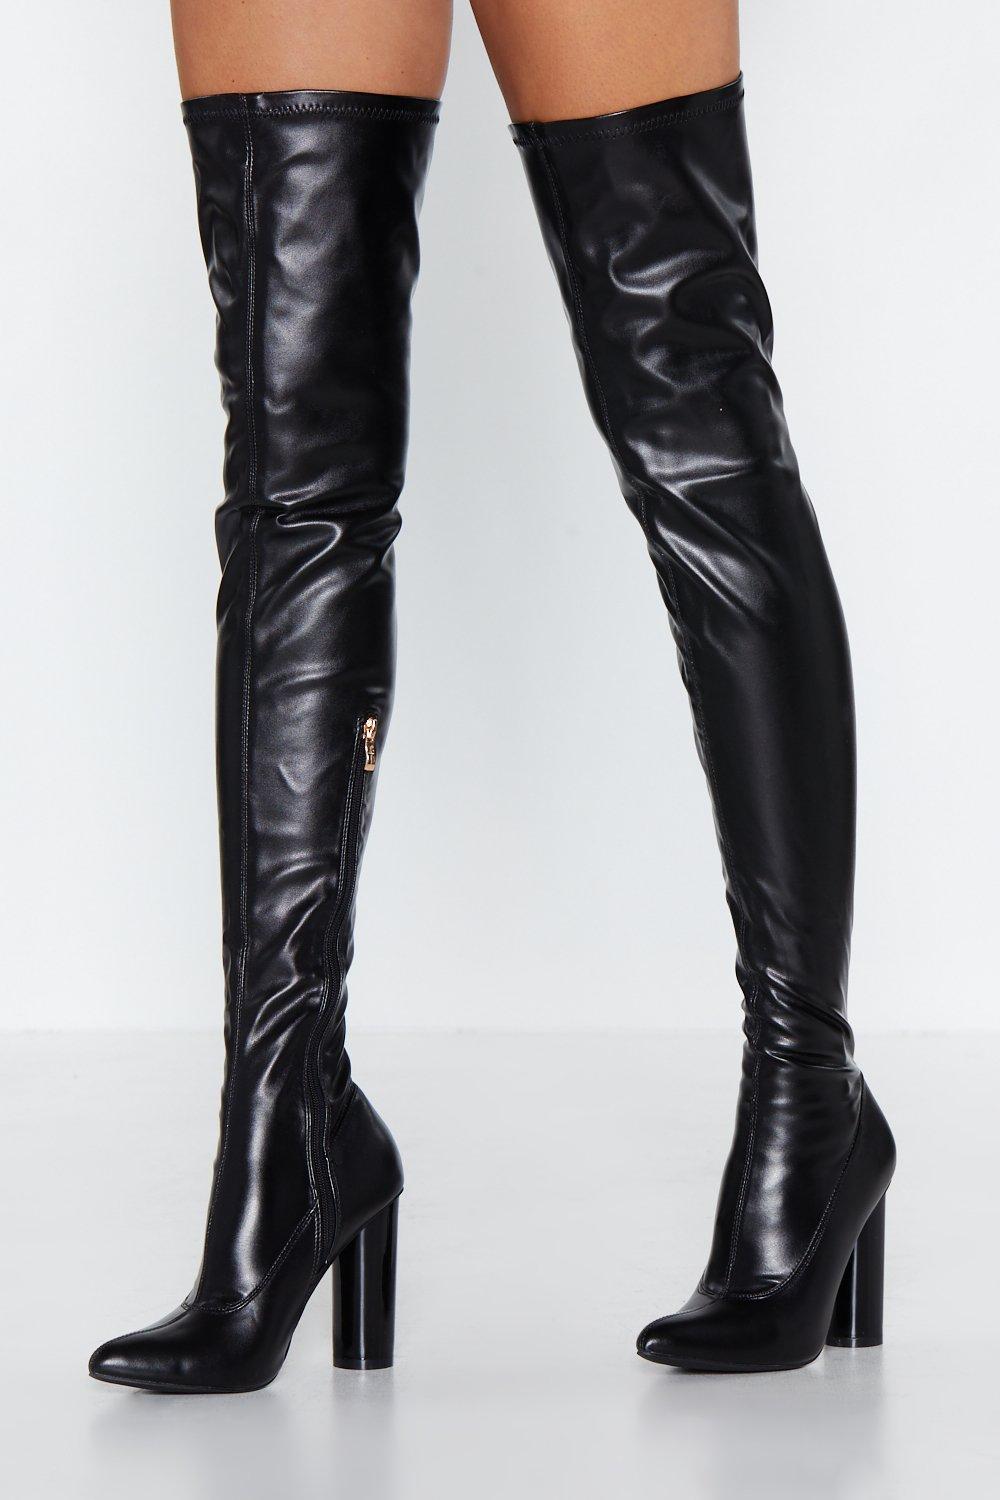 black latex thigh high boots